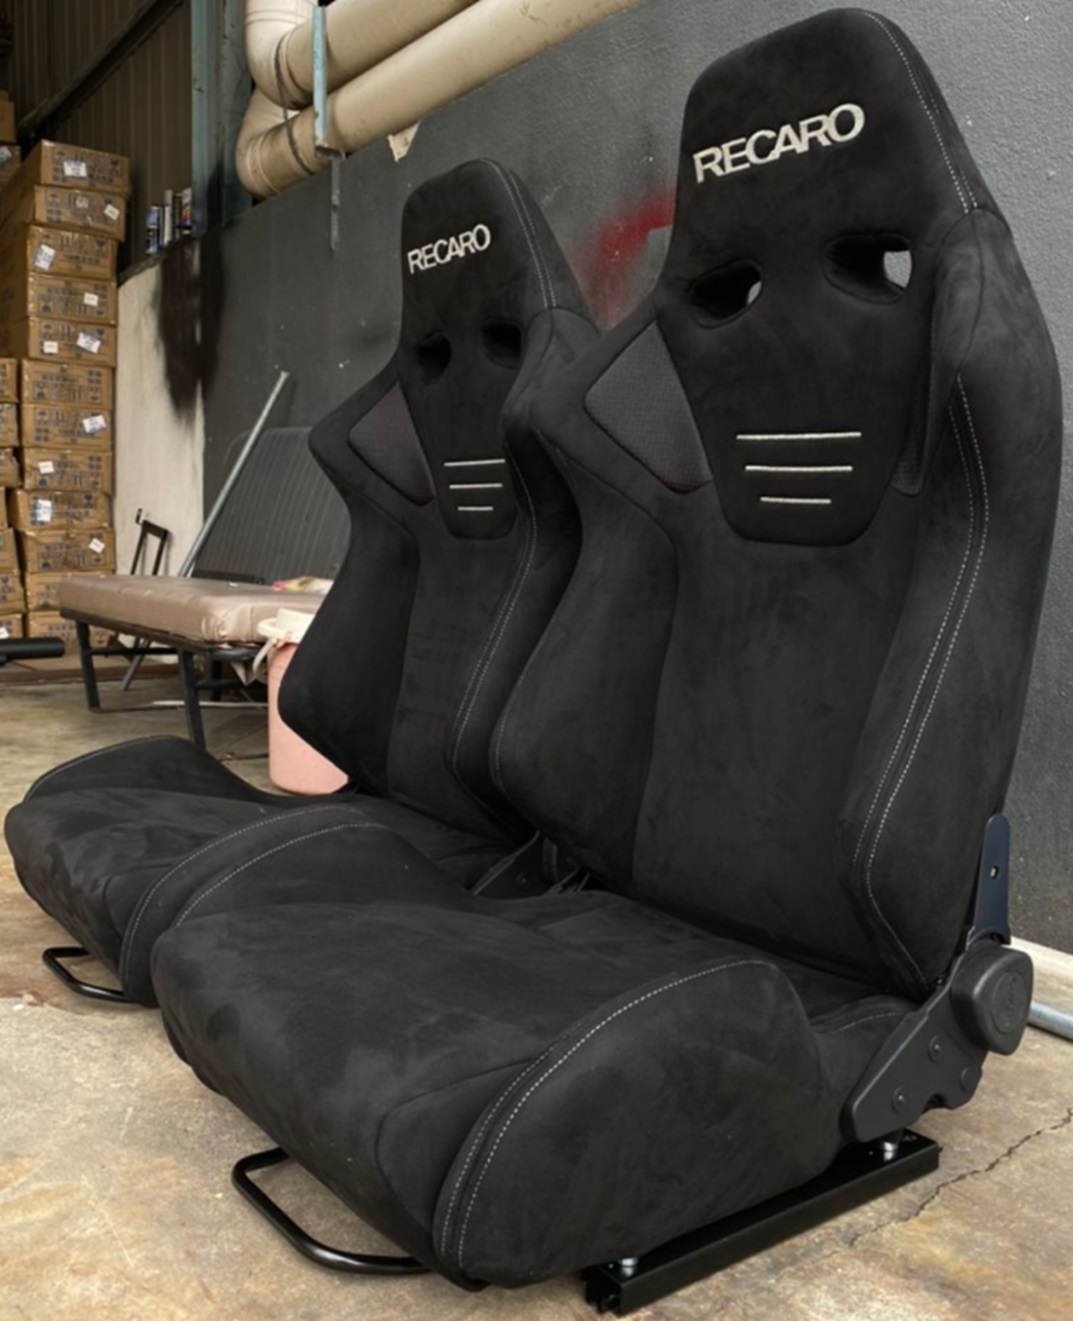 Recaro 1099 Racing Seat